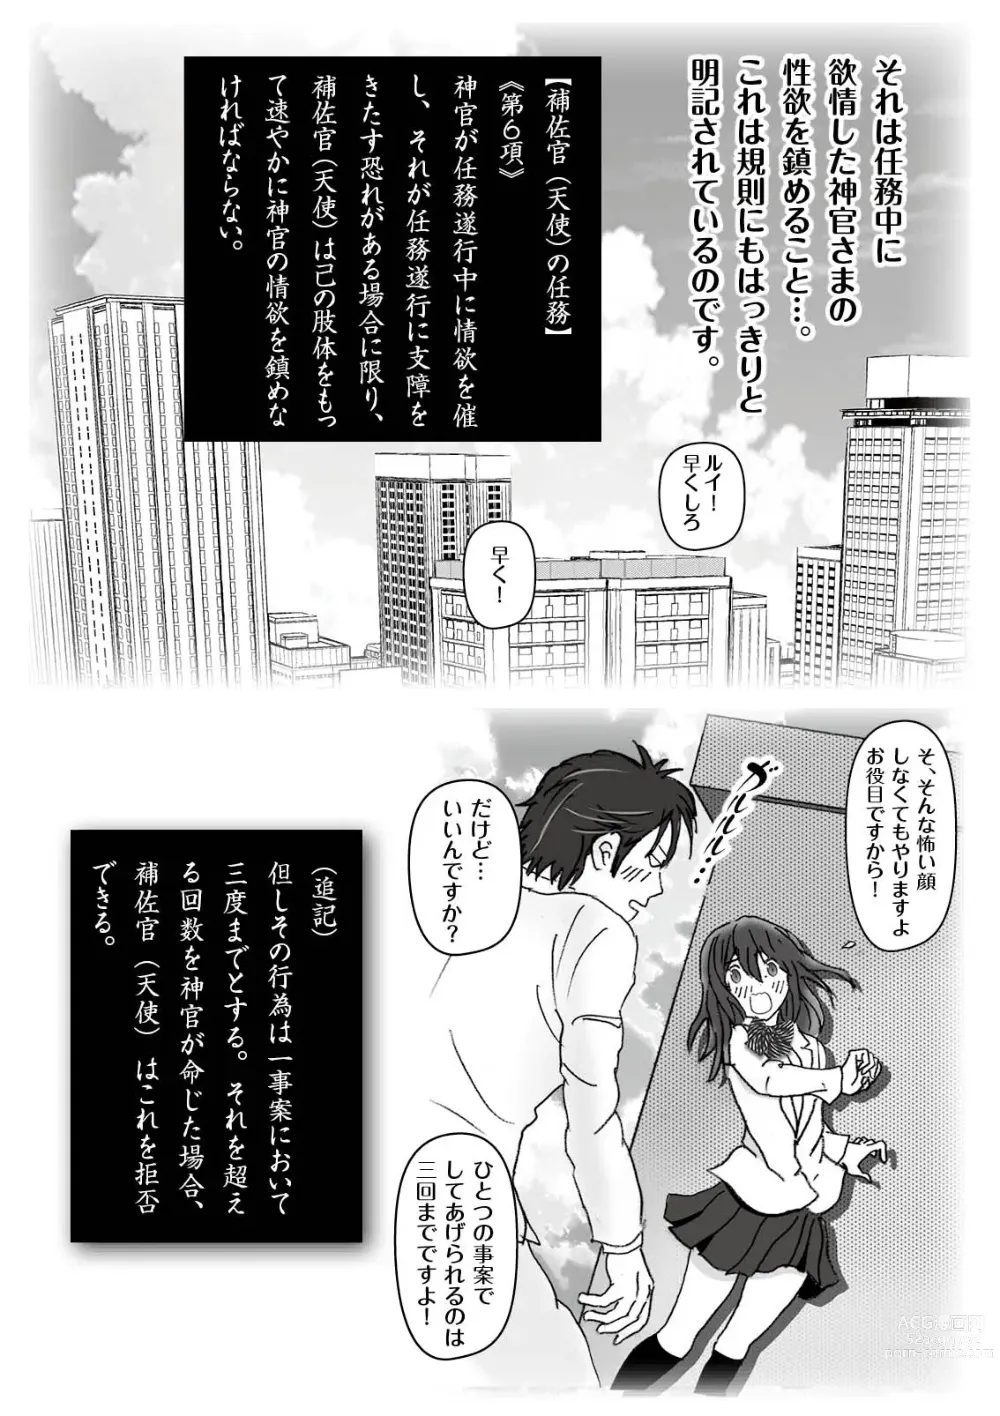 Page 15 of doujinshi Kochira Tengoku! Kinshin Soukan manen Boushika!